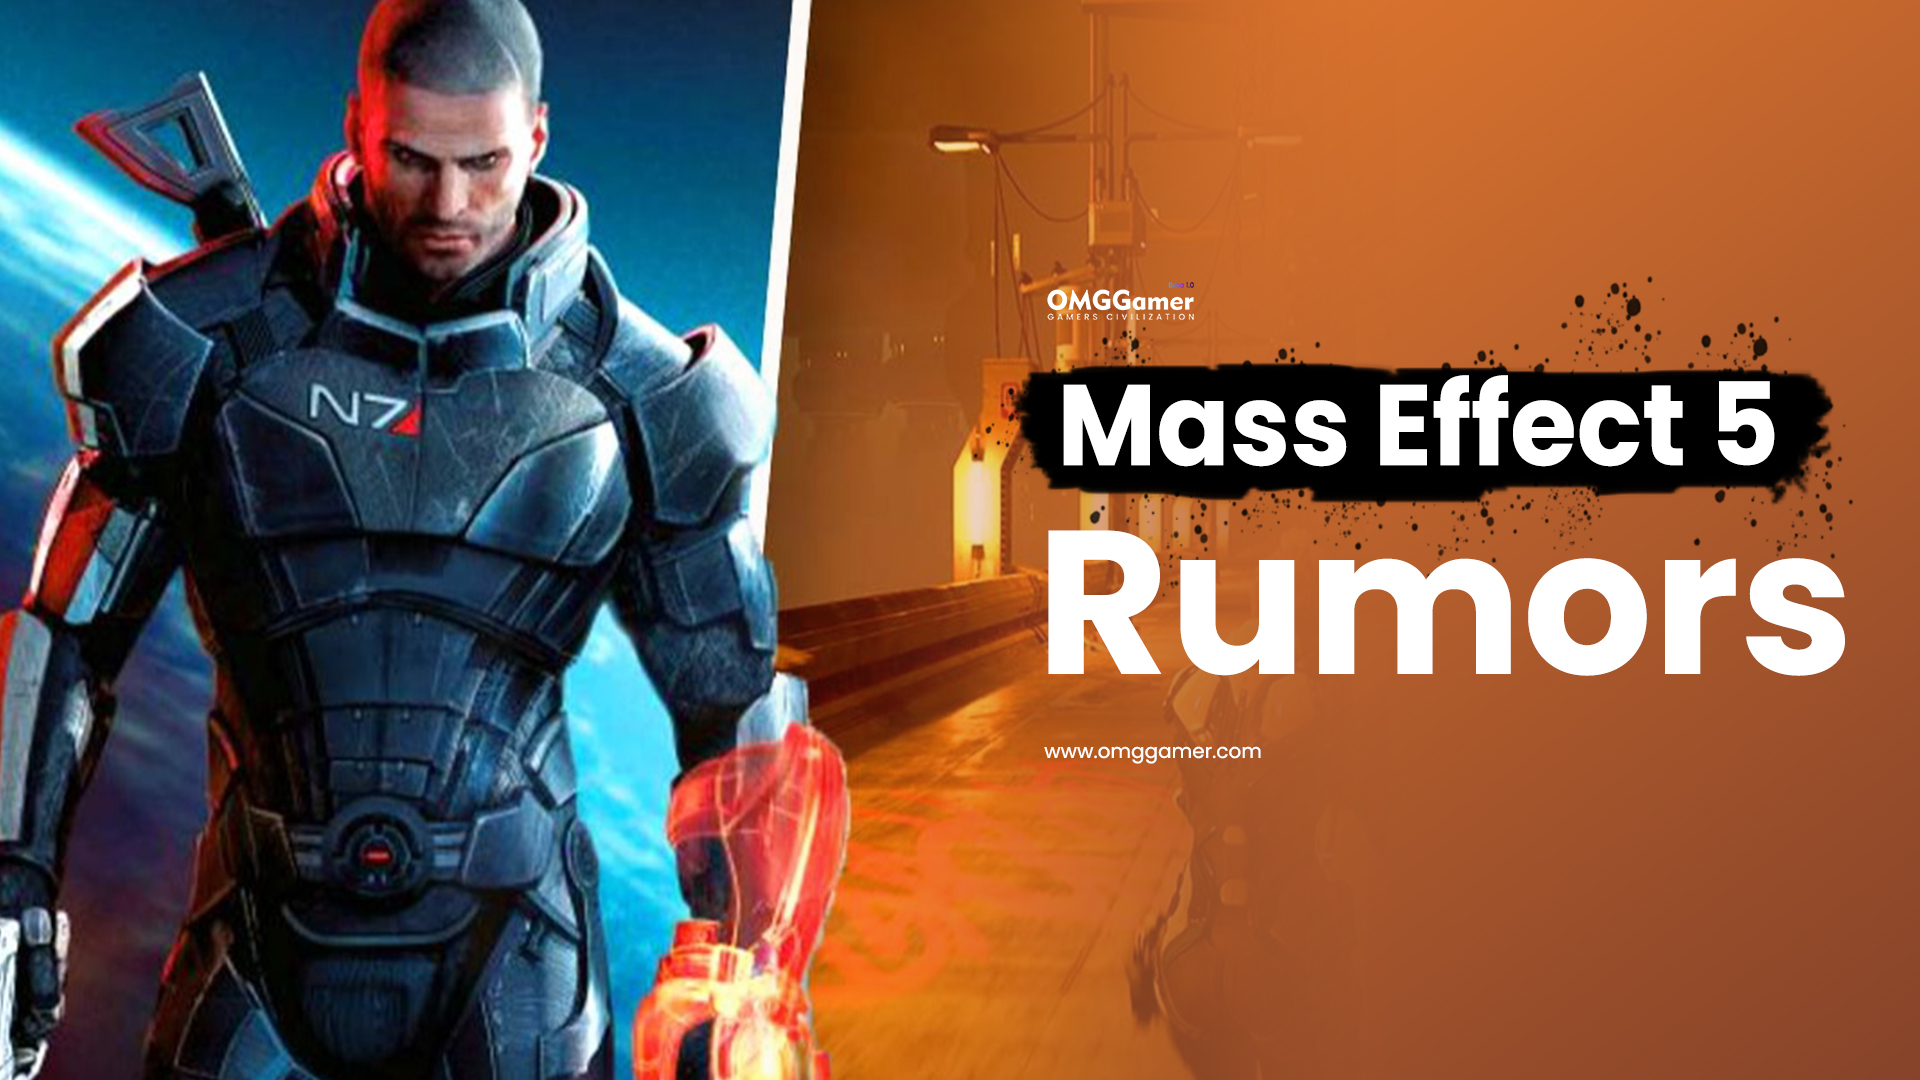 Mass Effect 5 Rumors